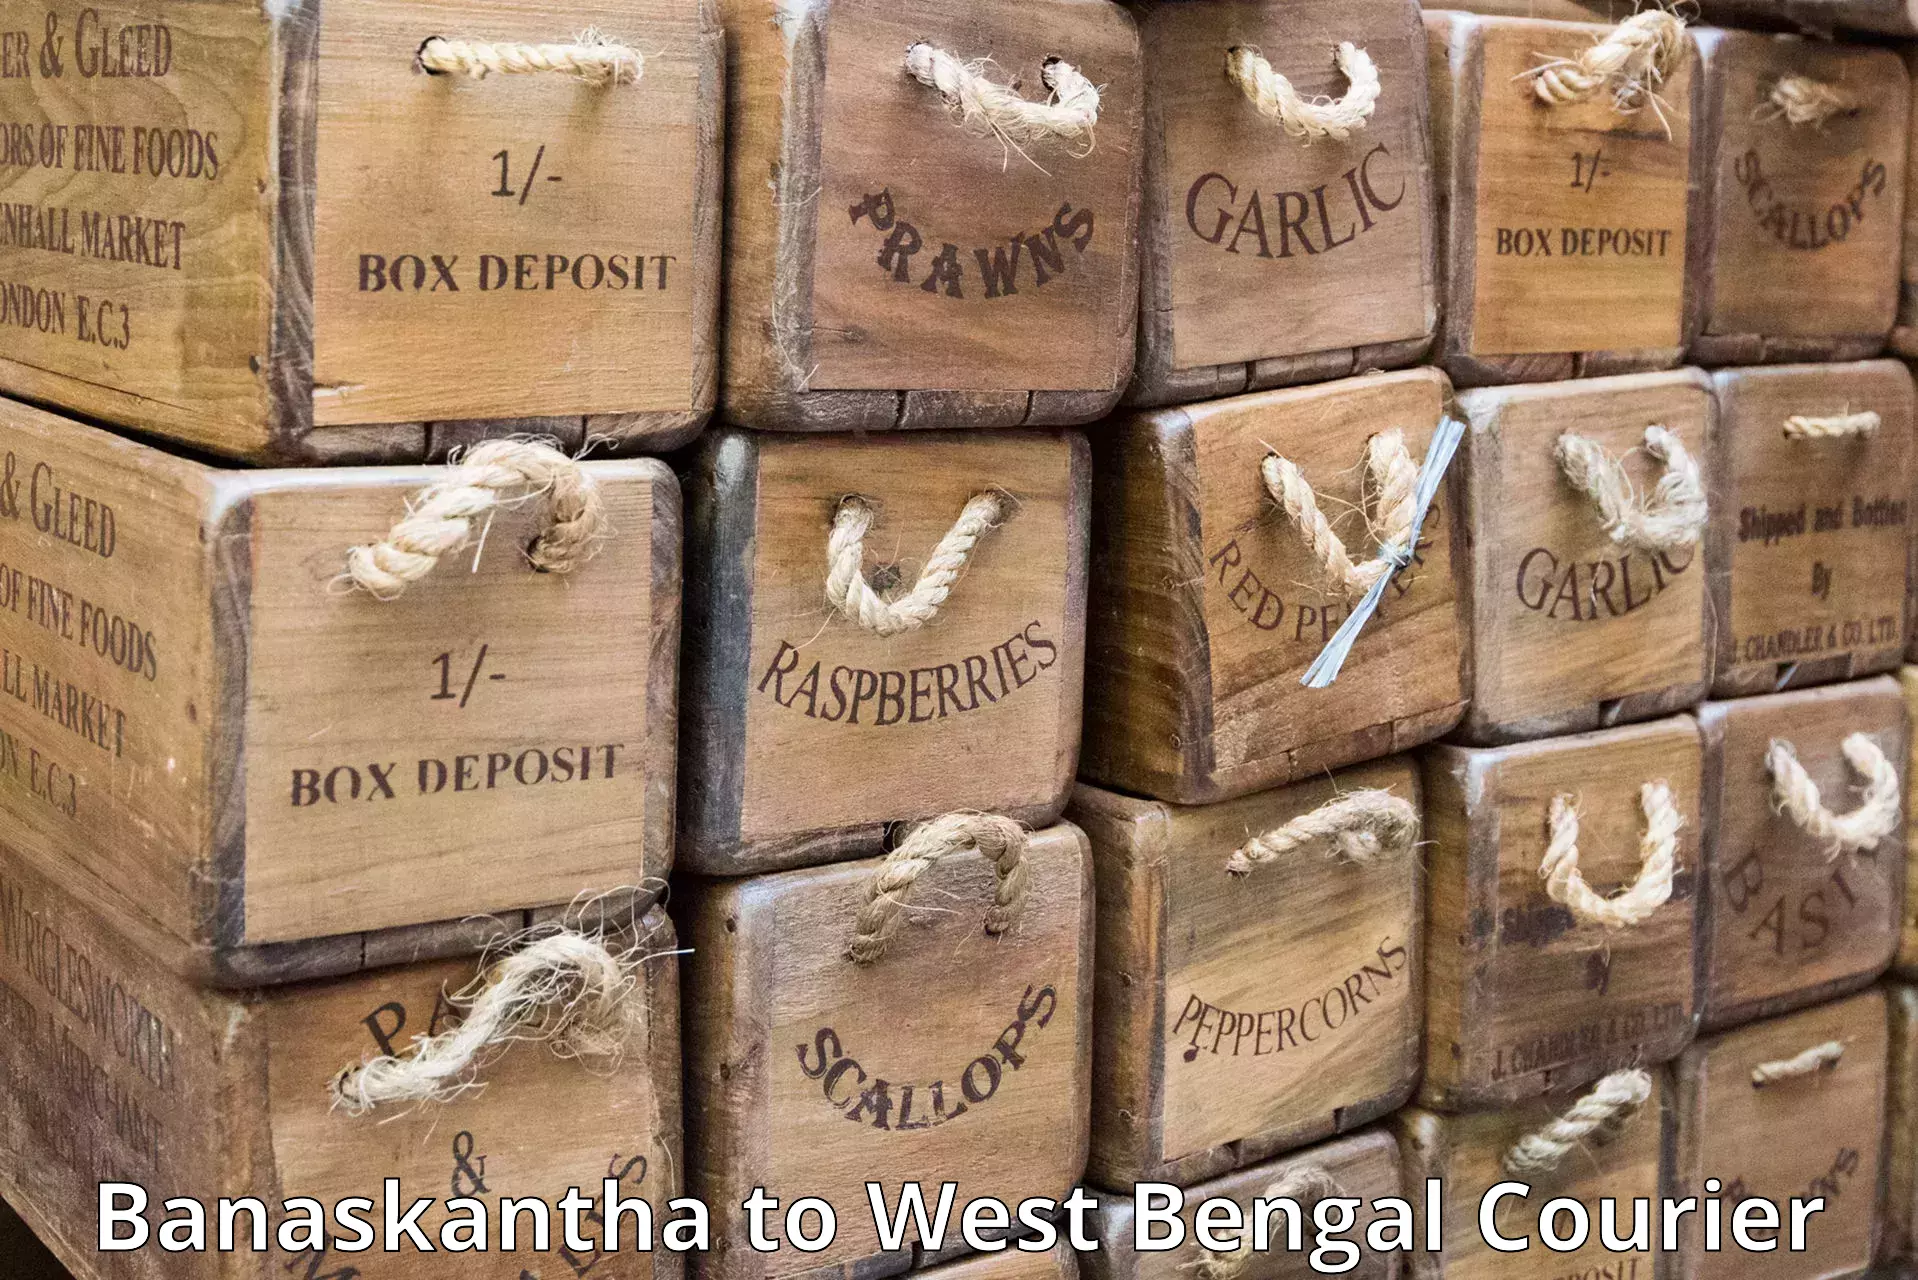 High-capacity parcel service Banaskantha to South 24 Parganas